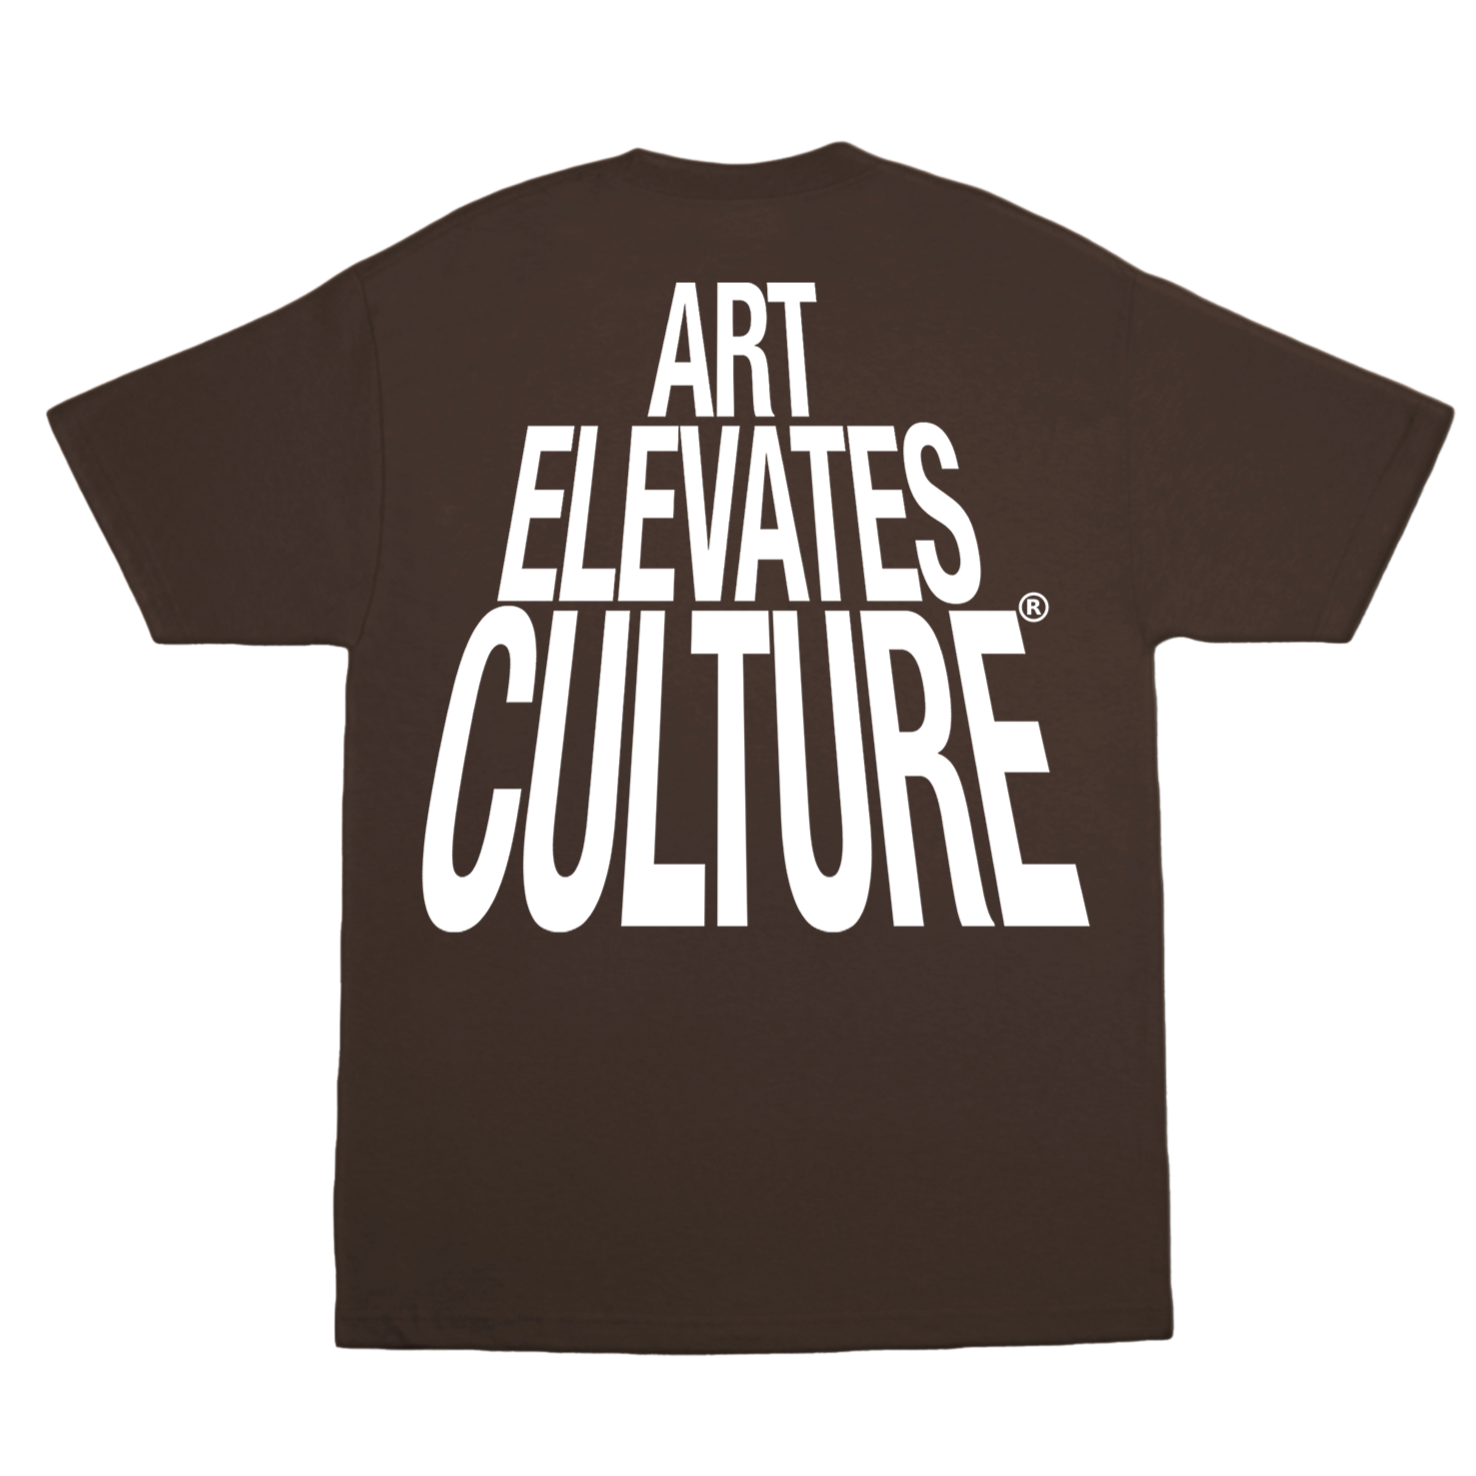 Art Elevates Culture - T-shirt (Brown)